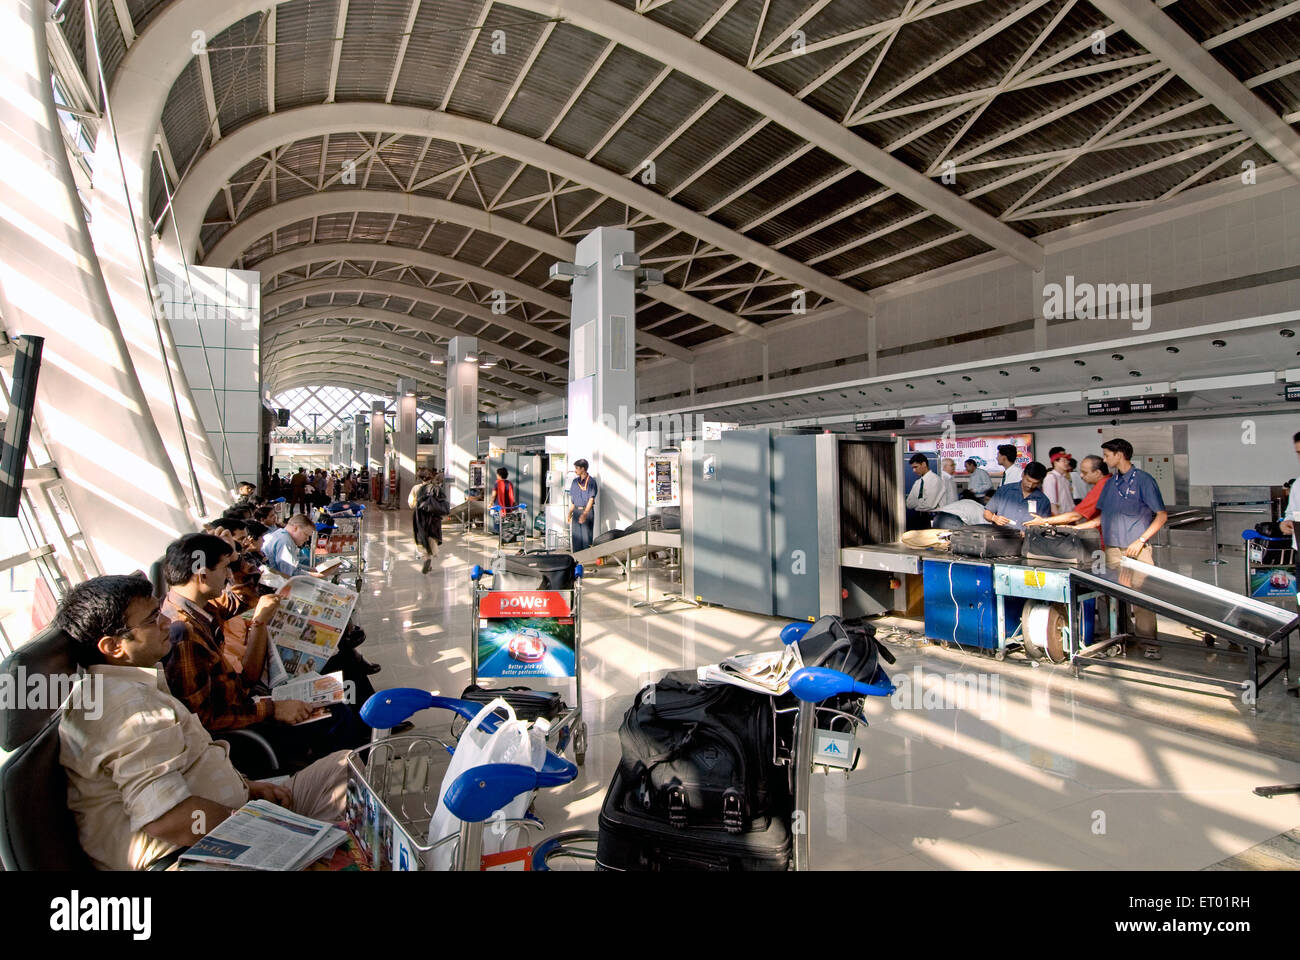 Aéroport international de Sahar, aéroport international Chhatrapati Shivaji Maharaj, Santacruz, Bombay, Mumbai, Maharashtra, Inde, Asie Banque D'Images